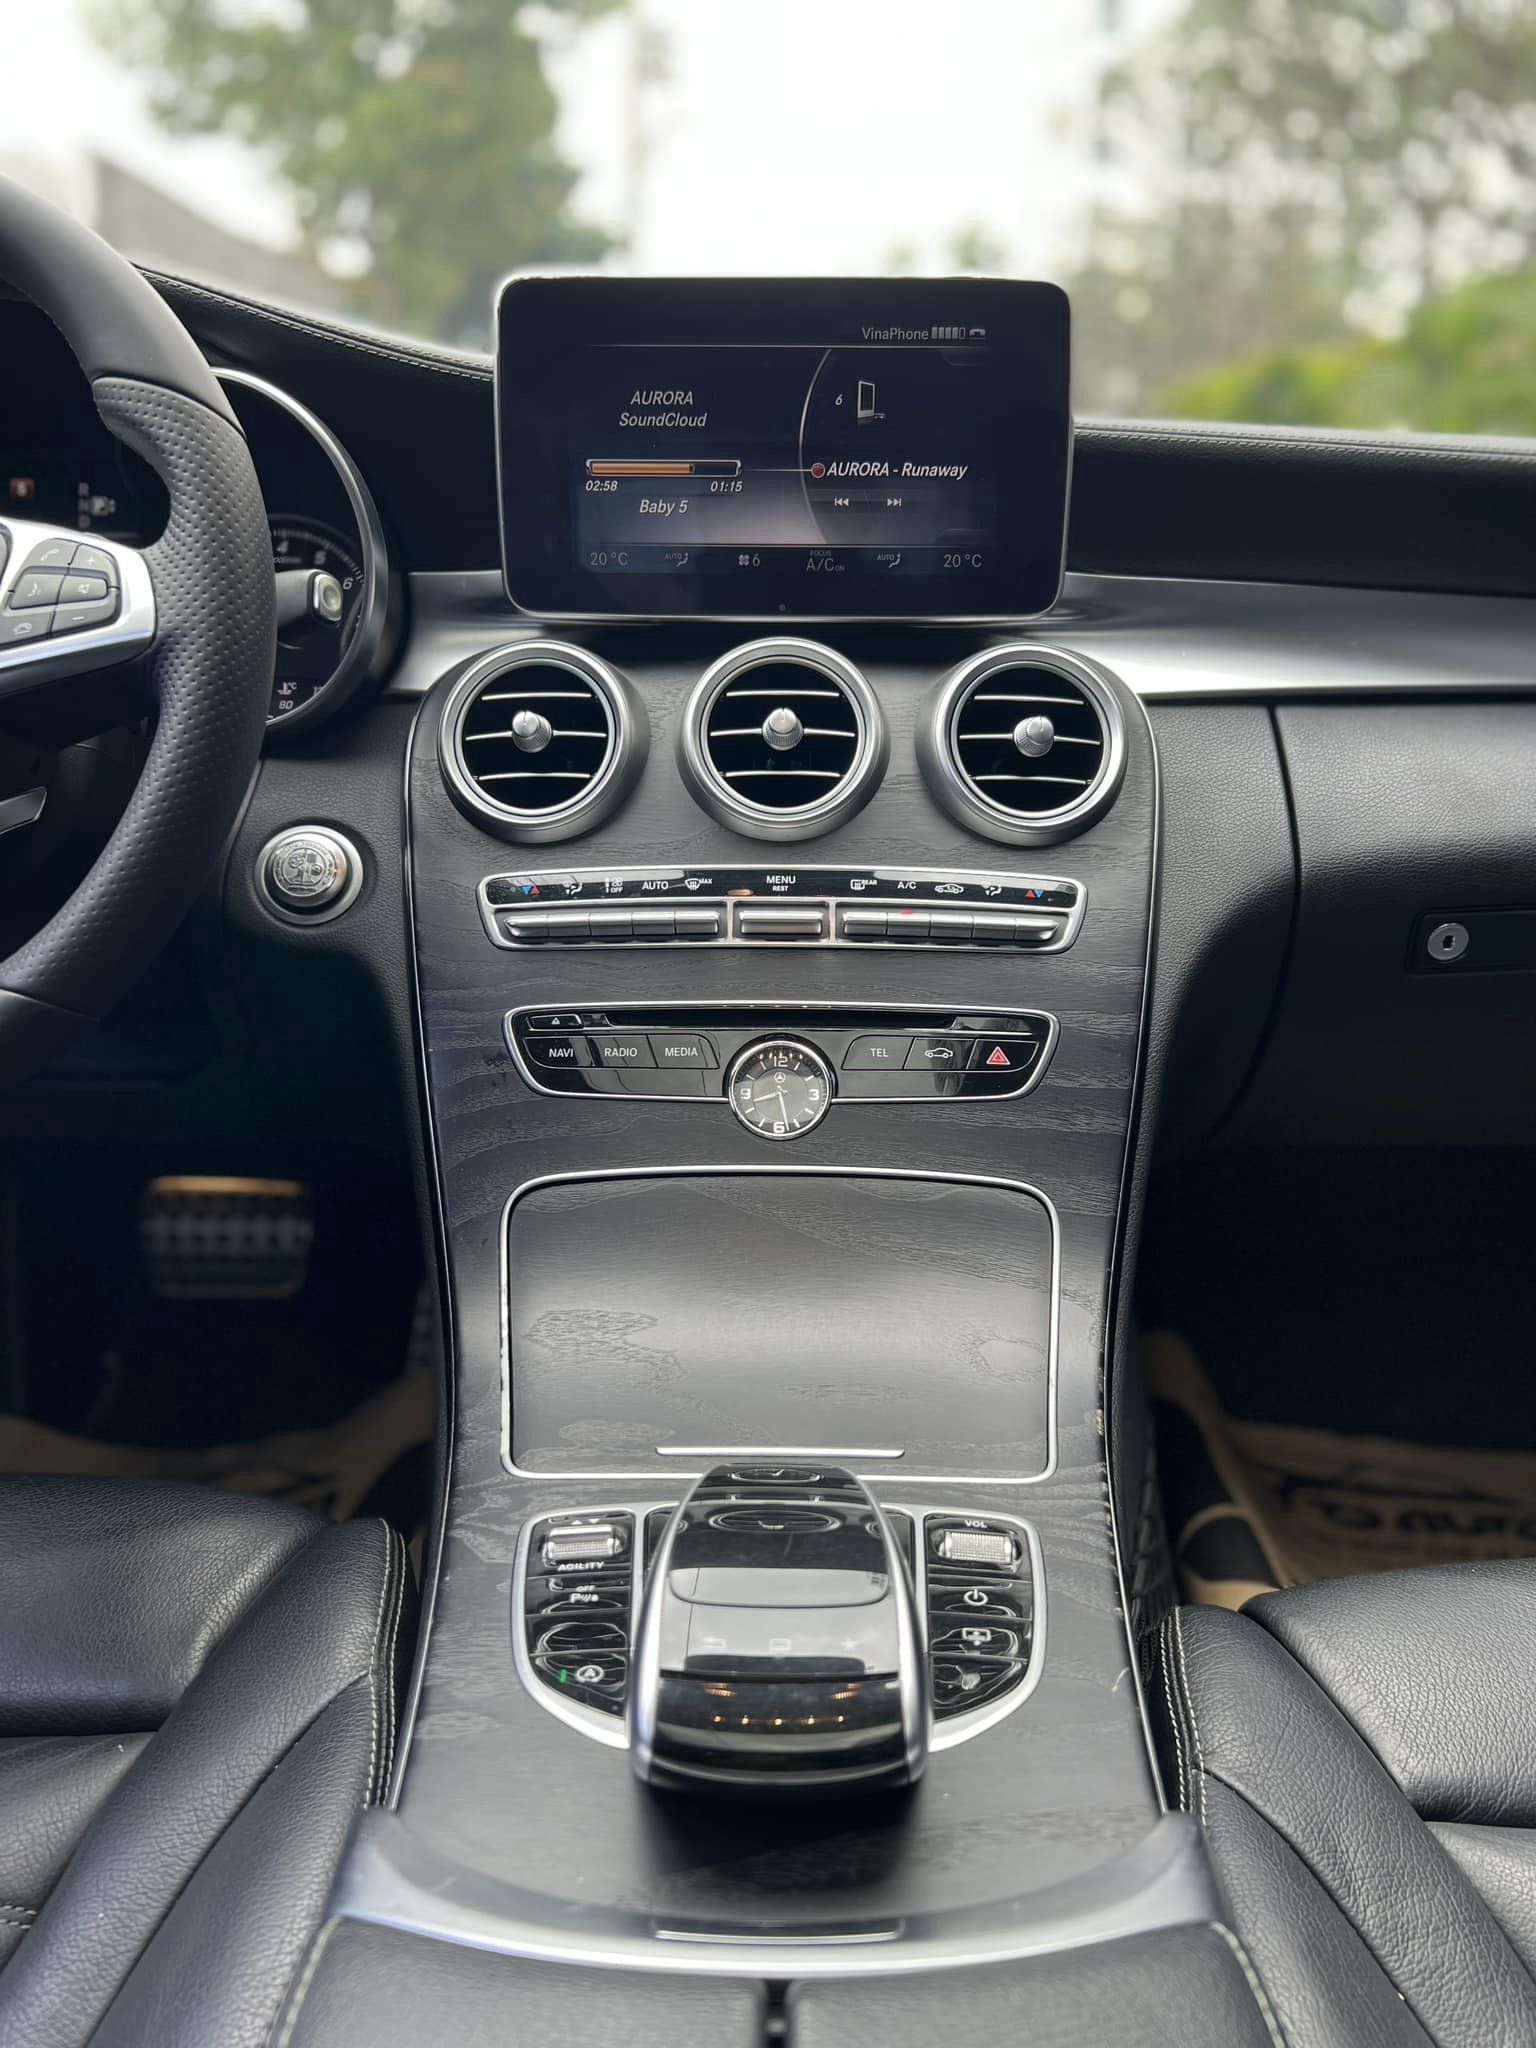 Mercedes-Benz C 250 2016 - Hỗ trợ tài chính ngân hàng tối đa đến 80%